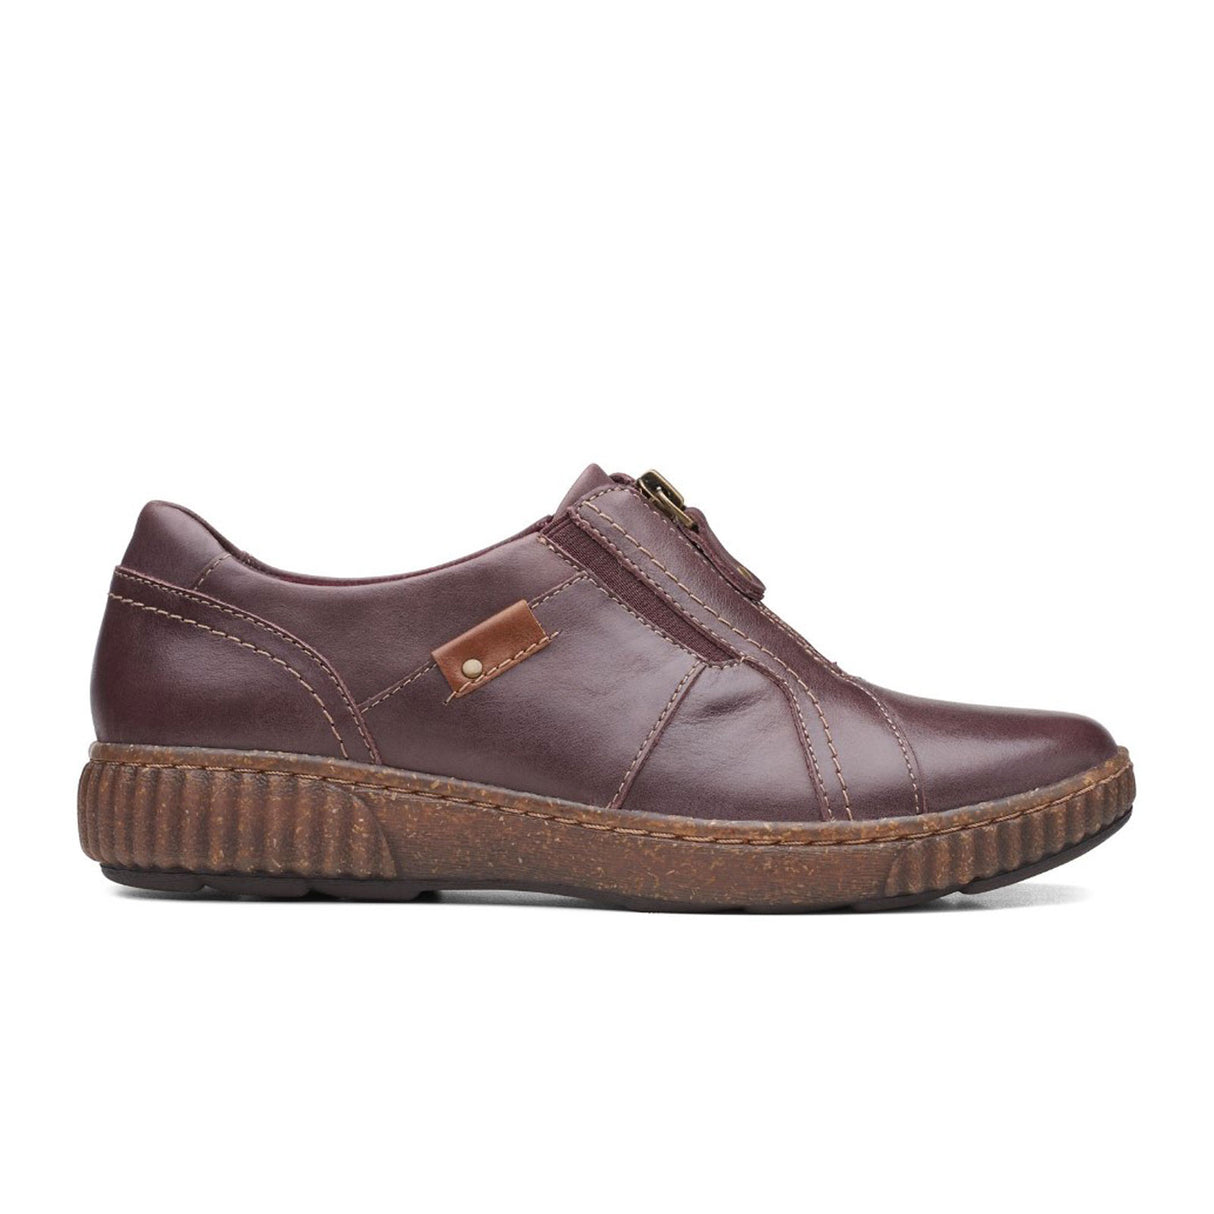 Clarks Magnolia Zip Slip-on (Women) - Burgundy Leather – The Heel Shoe ...